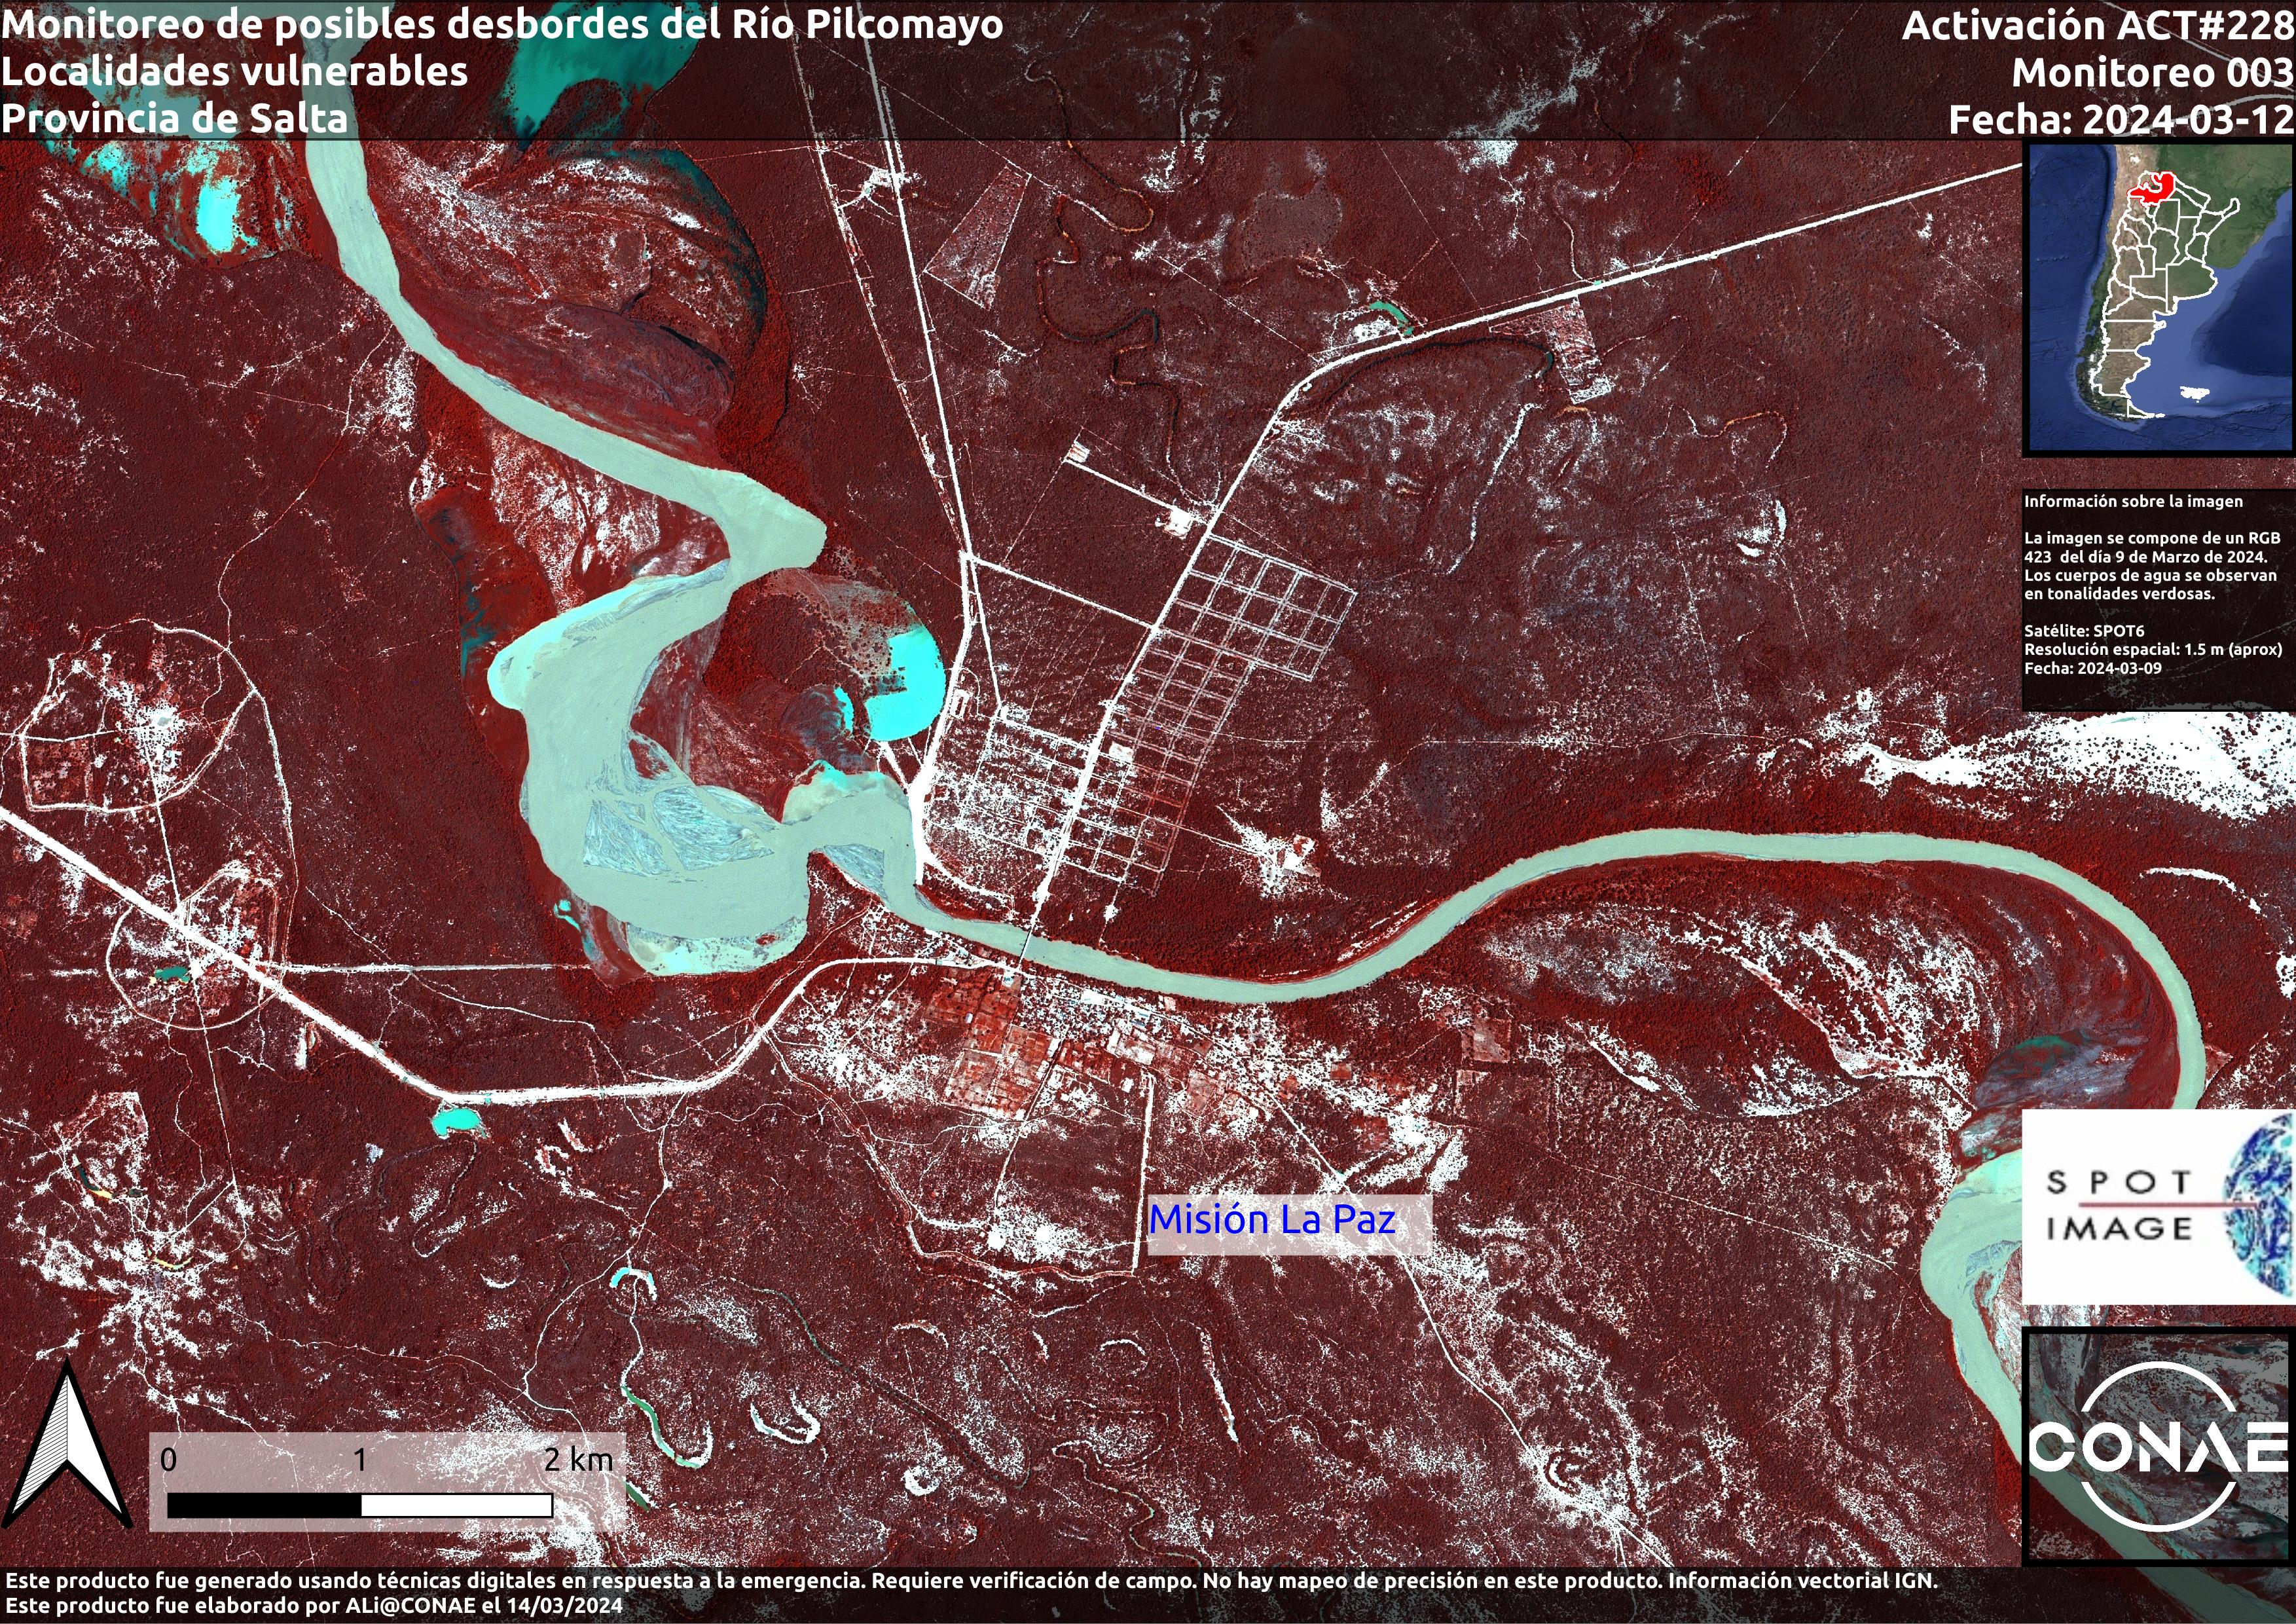 Mapa de Monitoreo de Posibles desbordes del Río Pilcomayo (UEAT-CONAE)